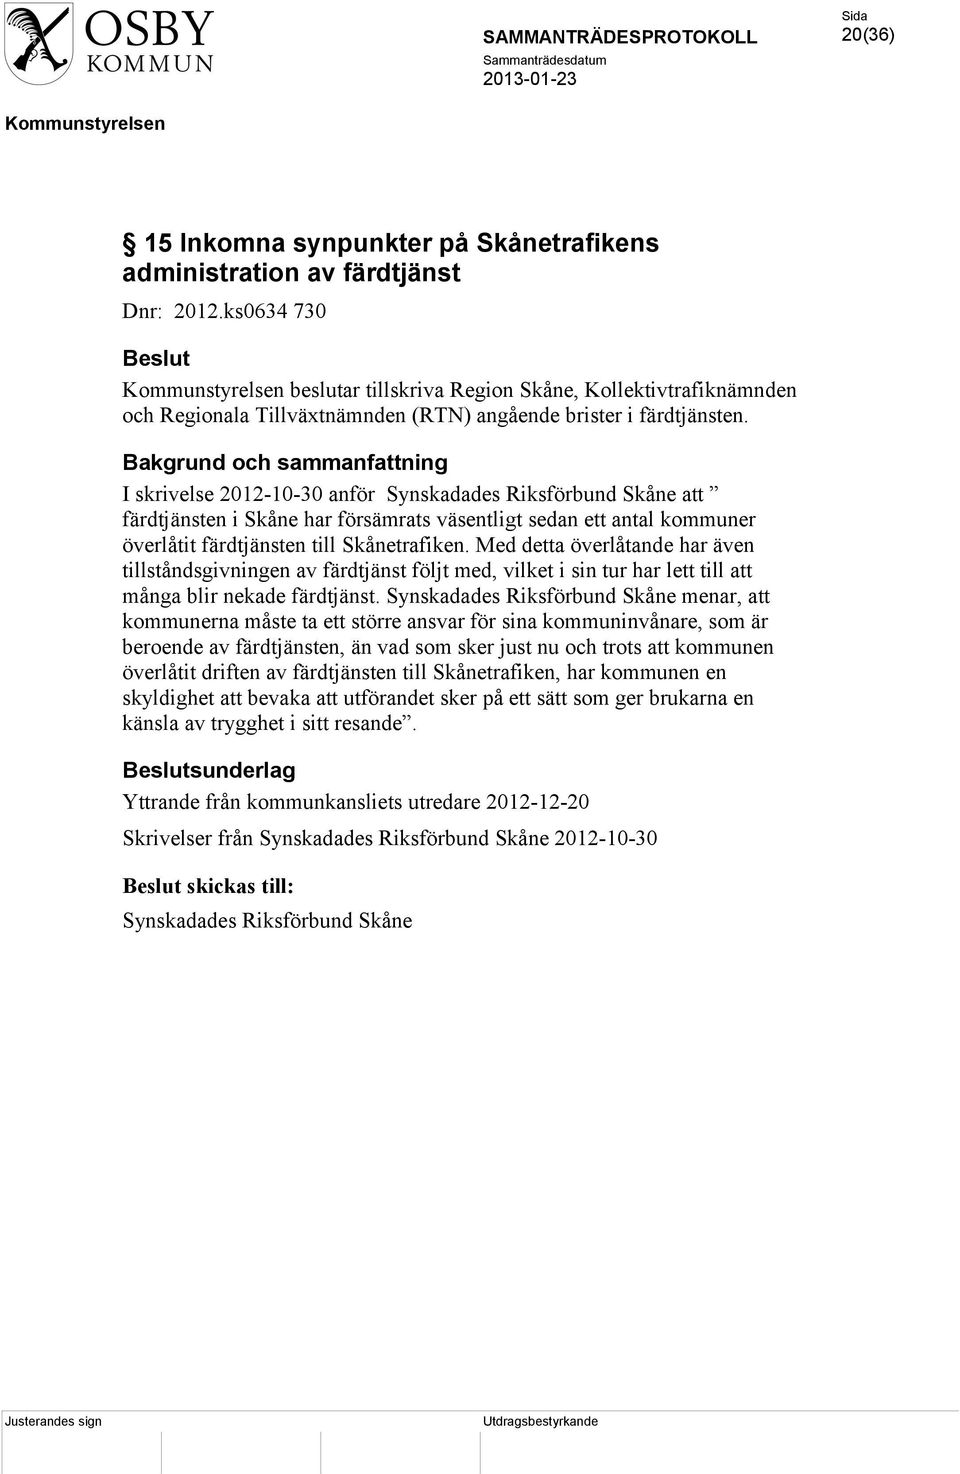 I skrivelse 2012-10-30 anför Synskadades Riksförbund Skåne att färdtjänsten i Skåne har försämrats väsentligt sedan ett antal kommuner överlåtit färdtjänsten till Skånetrafiken.